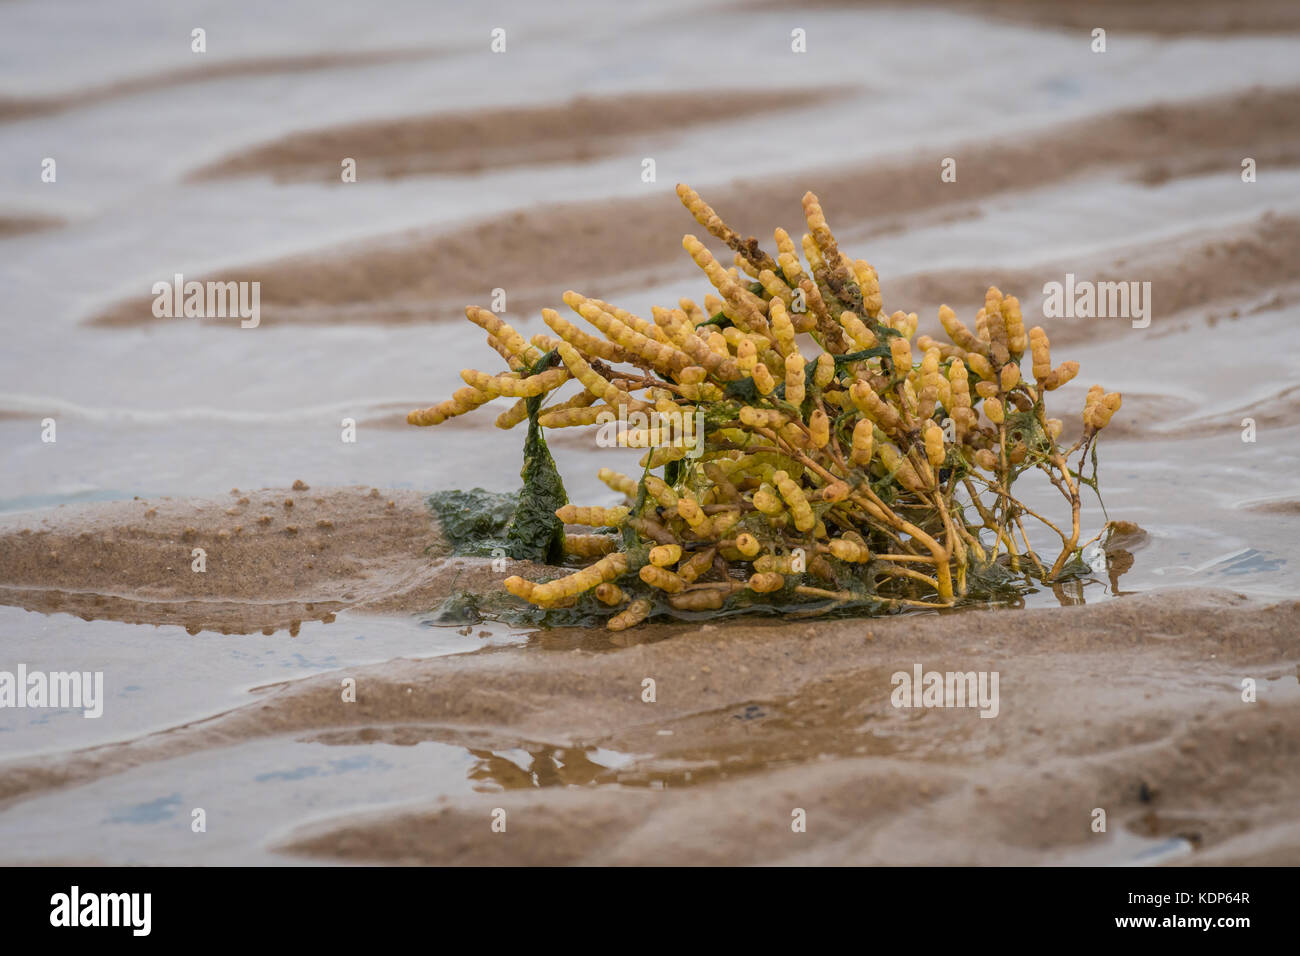 Una planta samphire creciente en la playa en la arena expuesta con la marea y las algas en el tallo Foto de stock